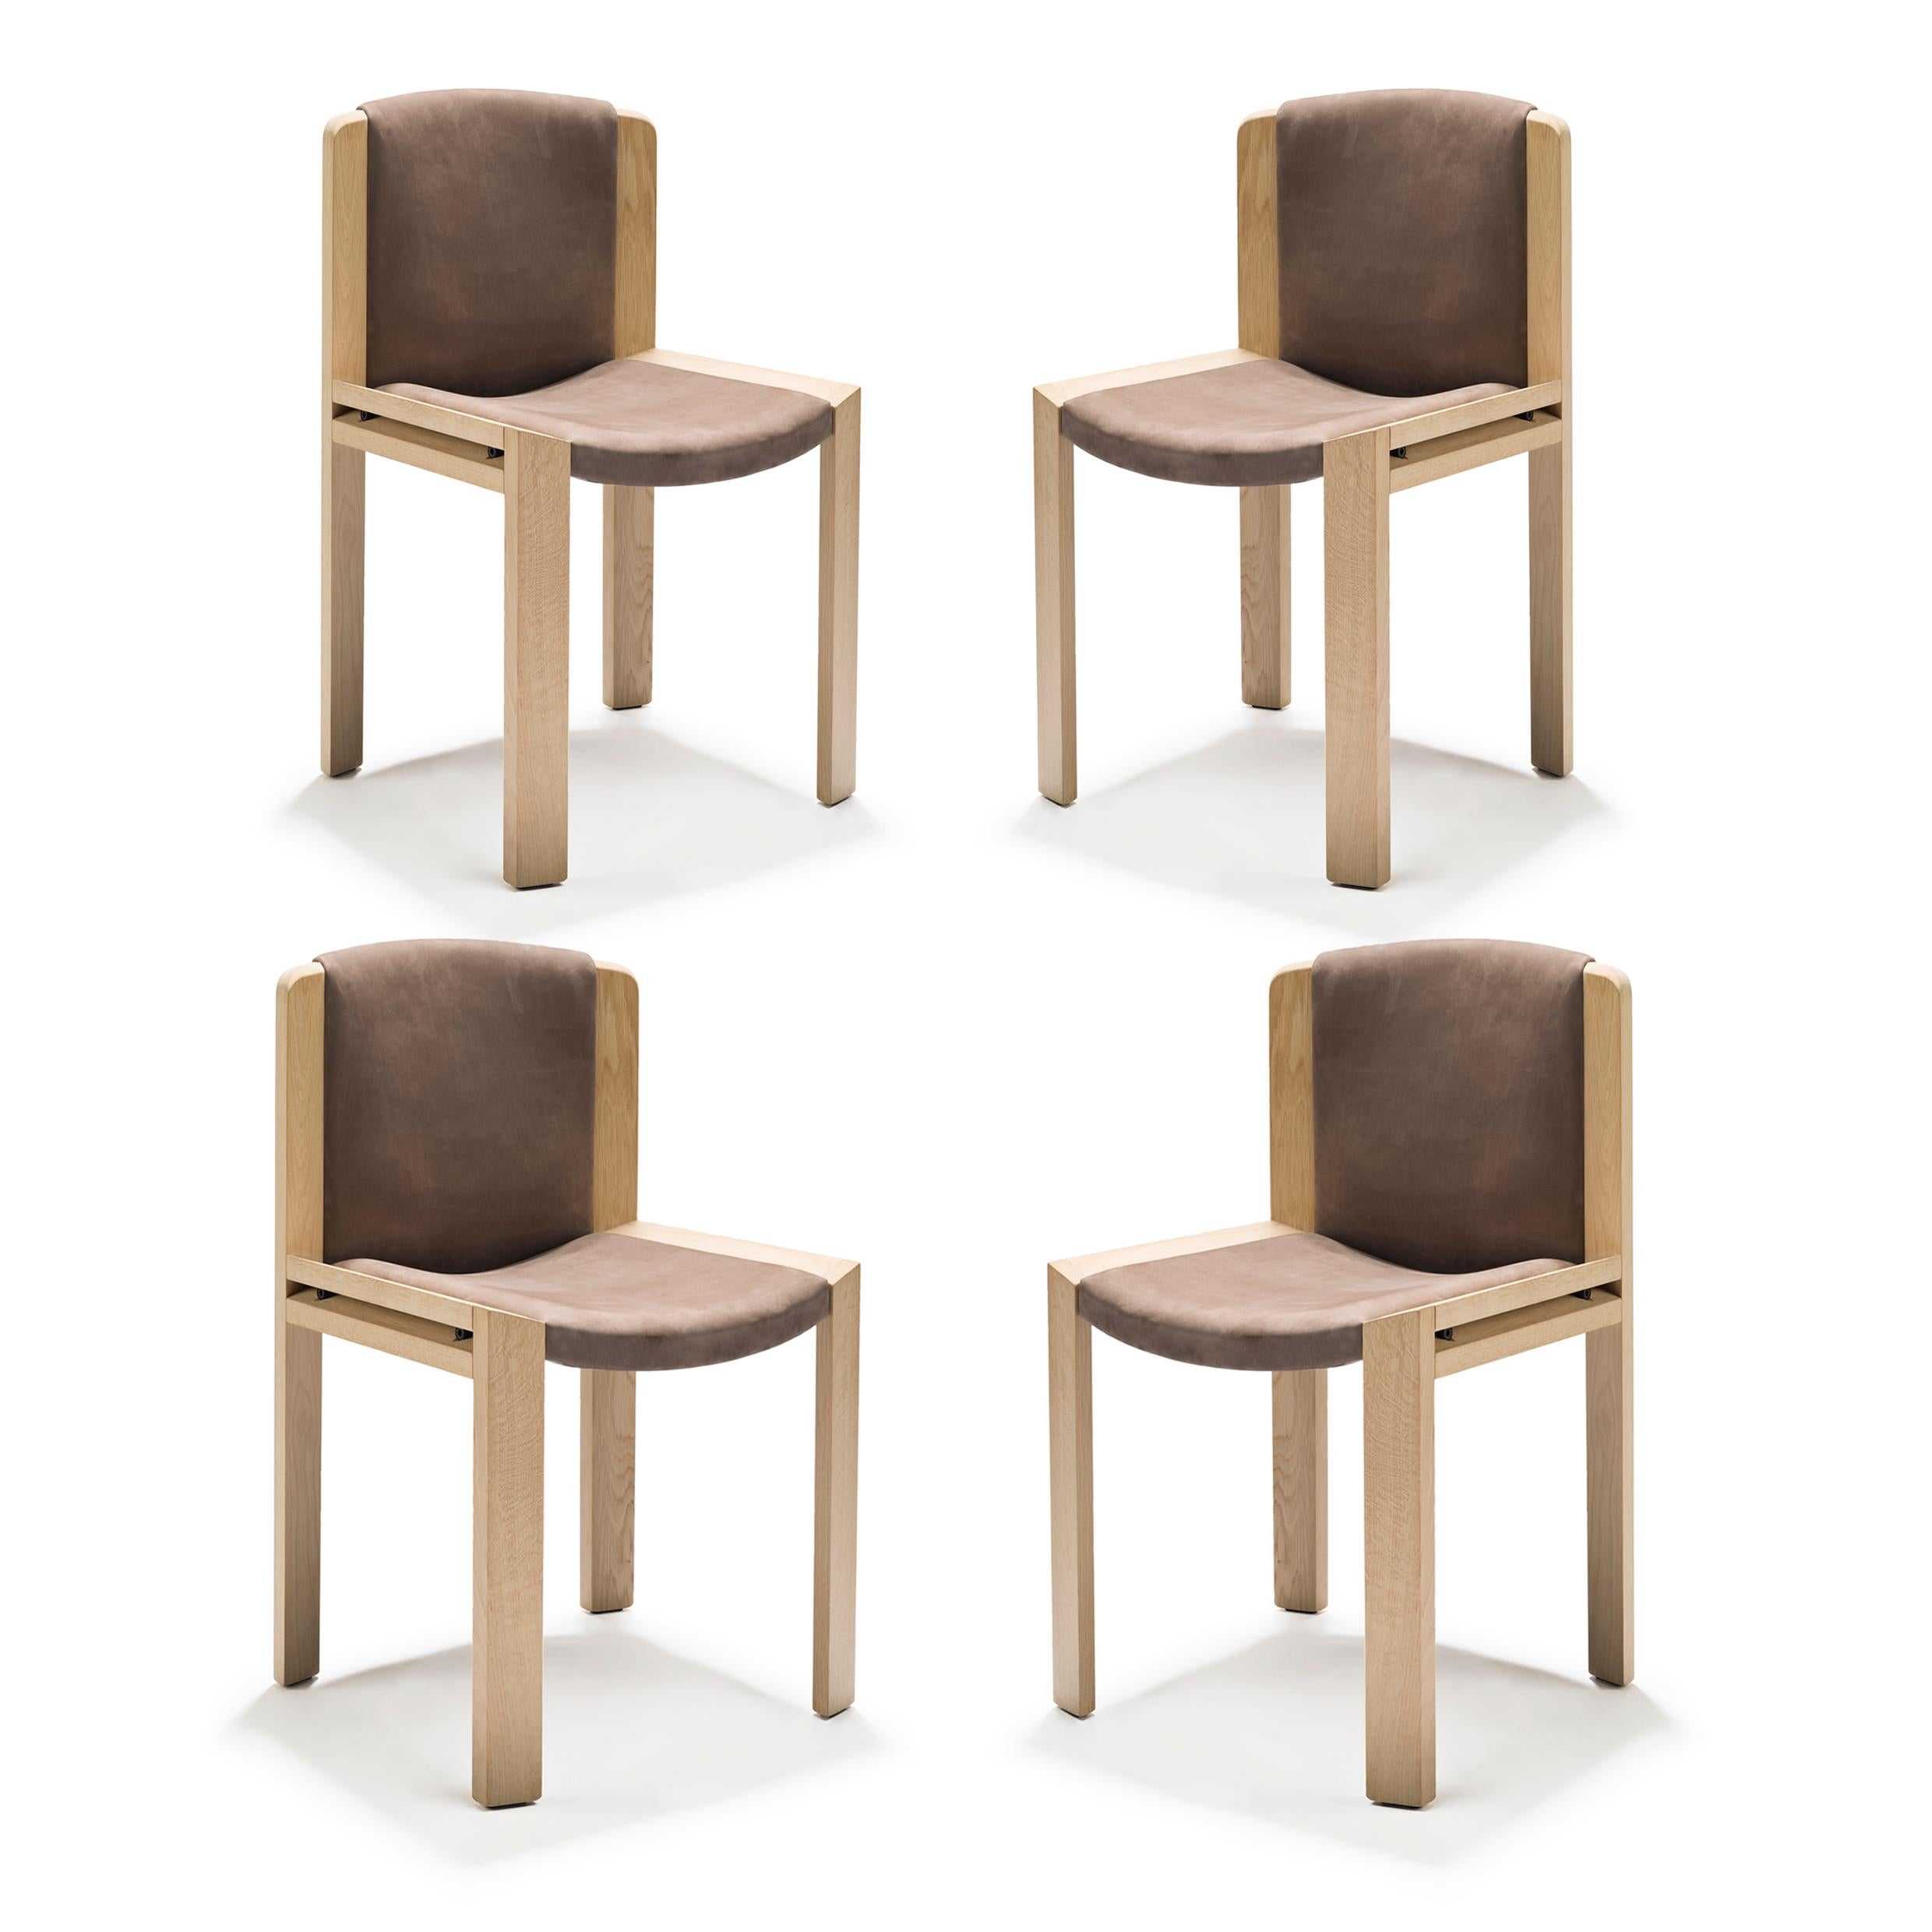 Stuhl, entworfen von Joe Colombo im Jahr 1965. 

Der von dem zukunftsorientierten italienischen Designer Joe Colombo entworfene Stuhl 300 ist ein schönes Beispiel für sein funktionales Designverständnis. Sitz und Rückenlehne sind gepolstert und